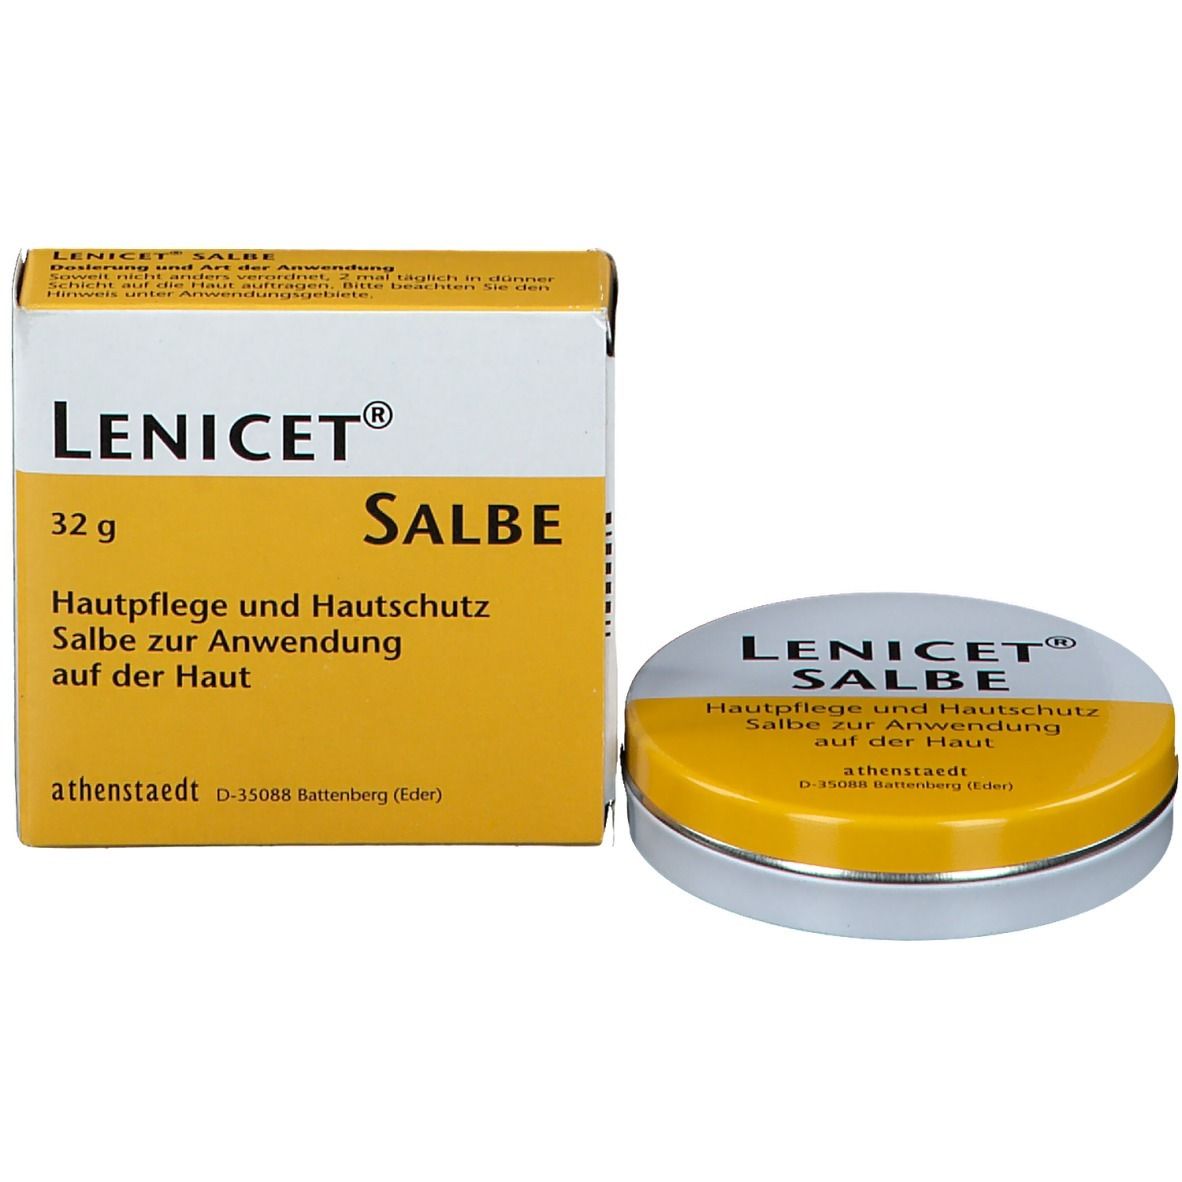 Lenicet® Salbe